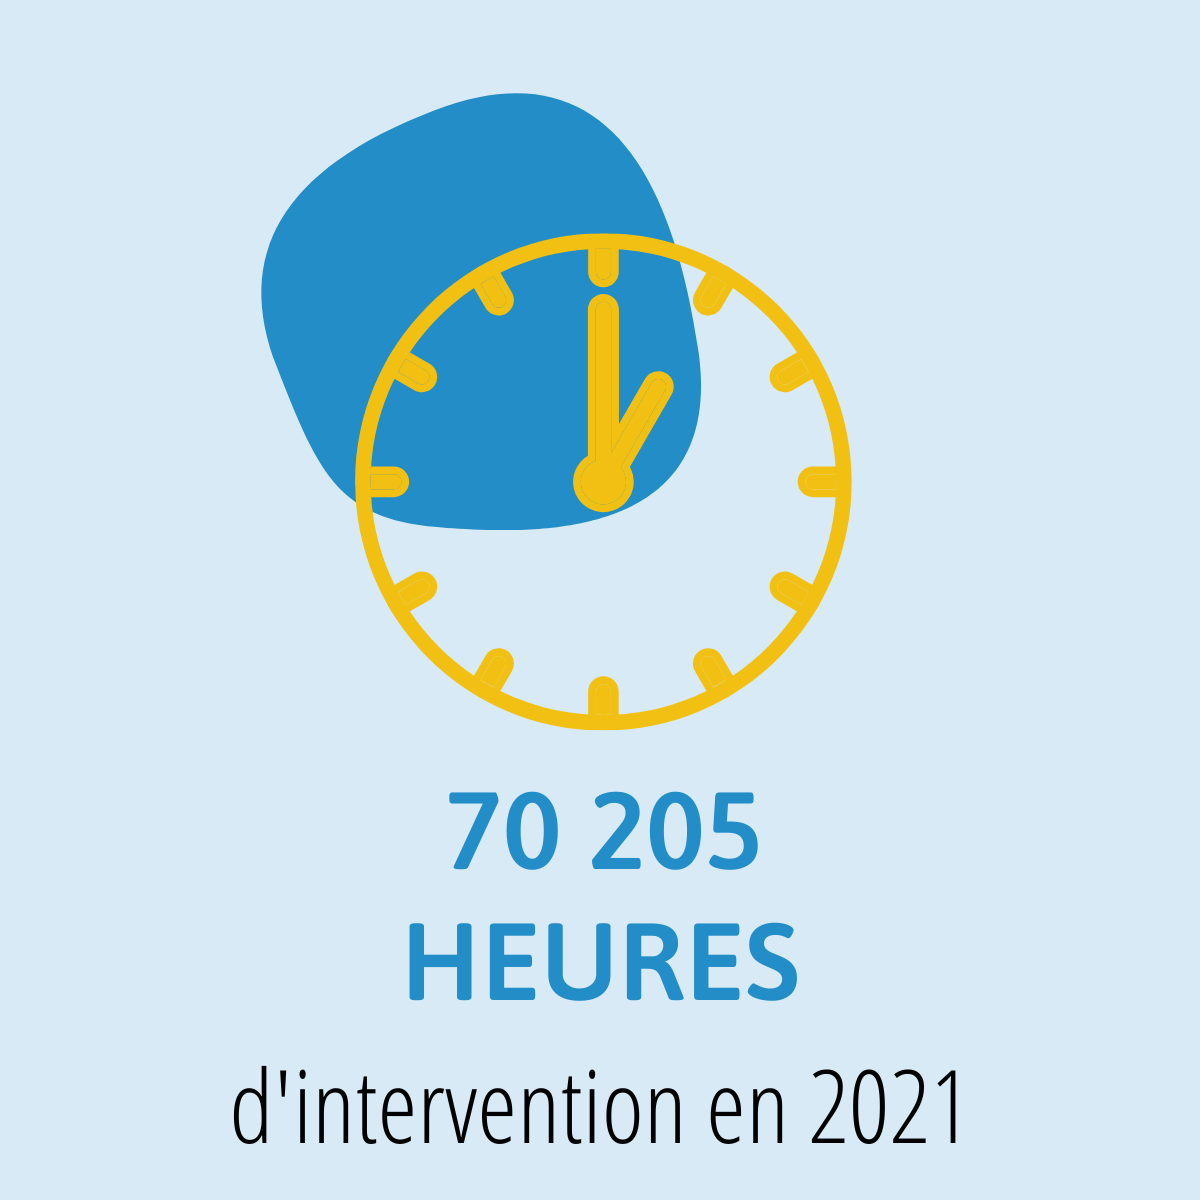 70 205 heures d'intervention en 2021